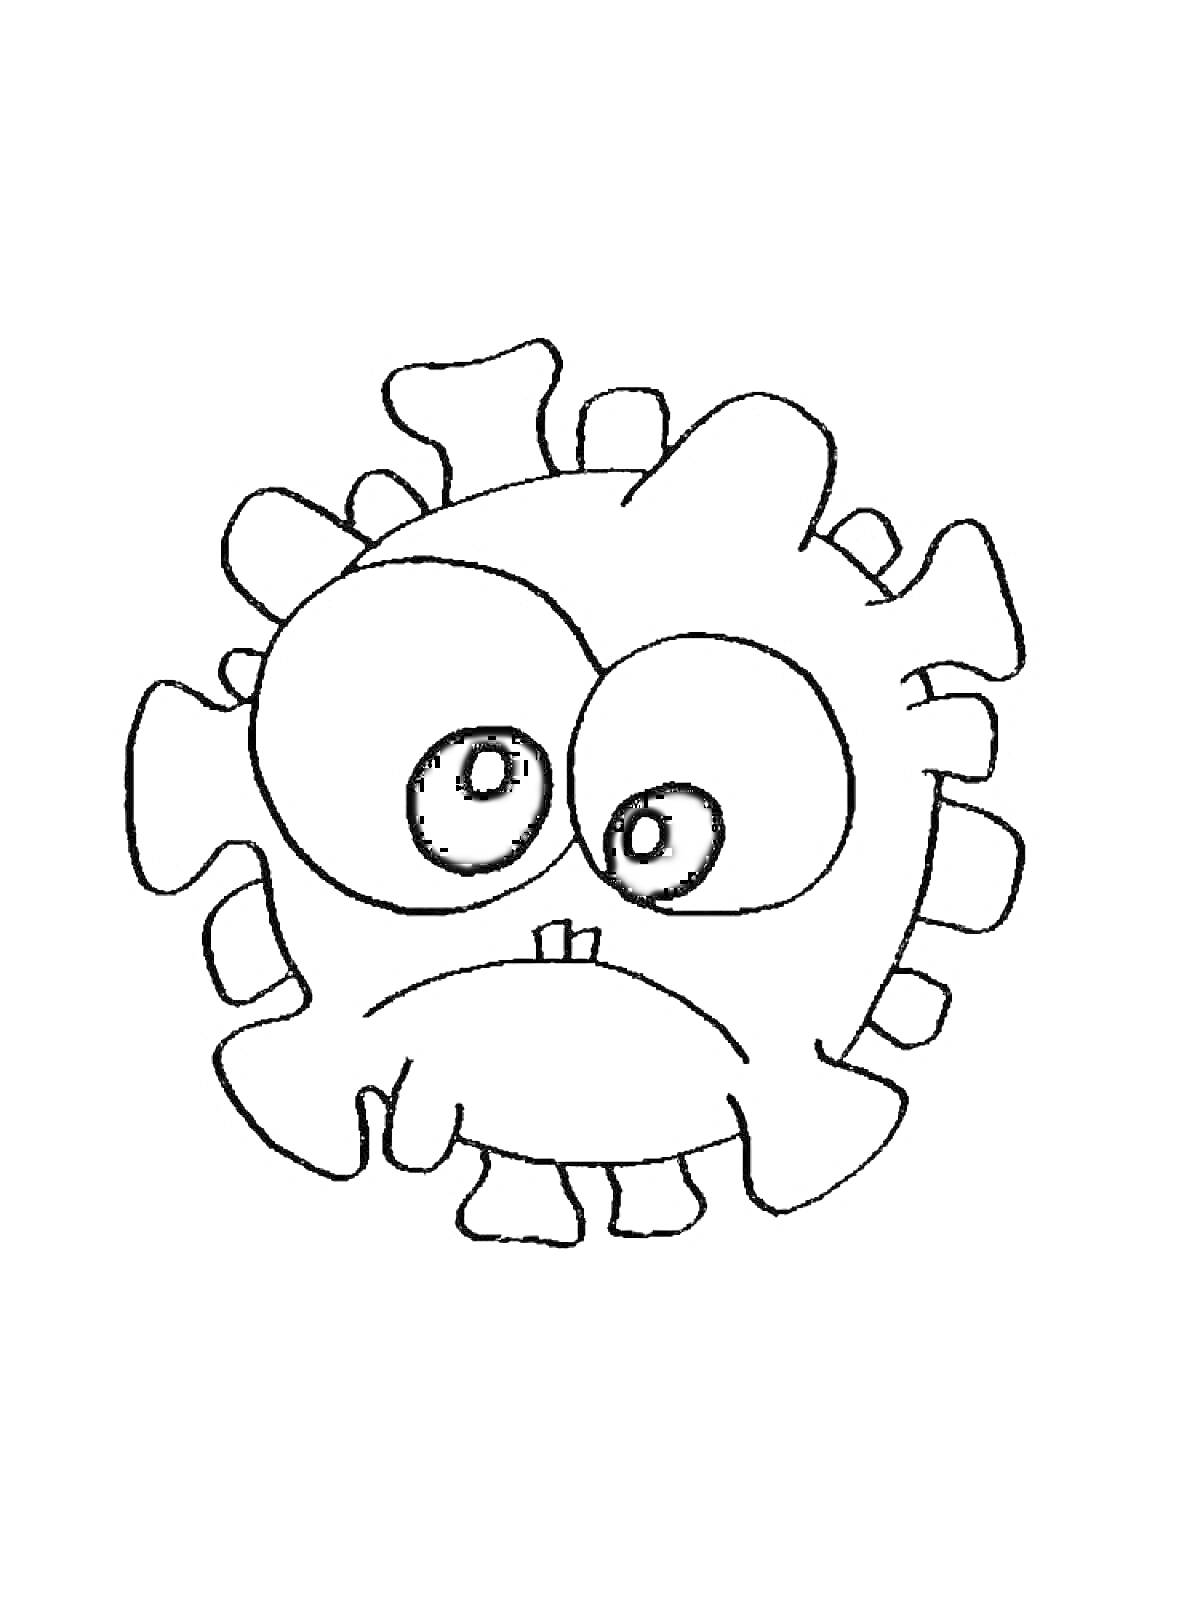 Раскраска Забавный коронавирус с большими глазами и грустным выражением лица